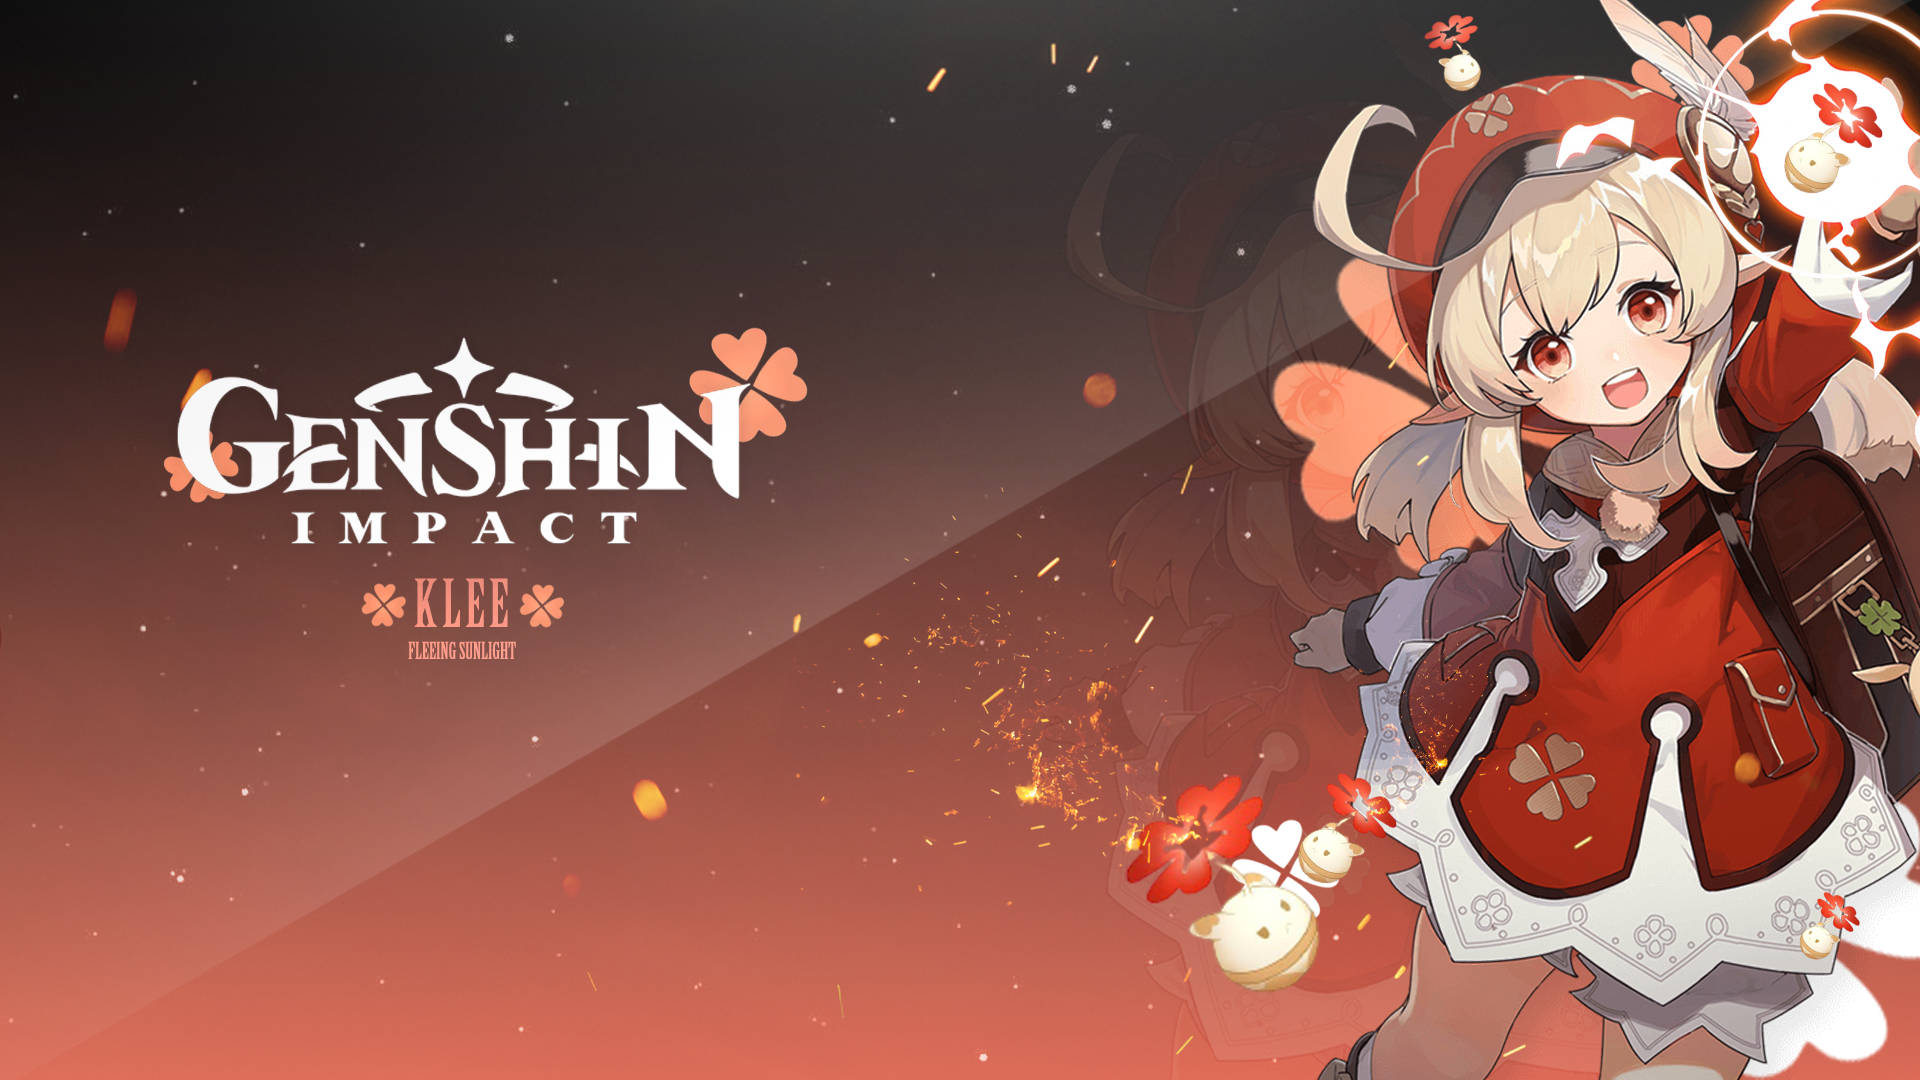 Personajeklee De Genshin Impact. Fondo de pantalla